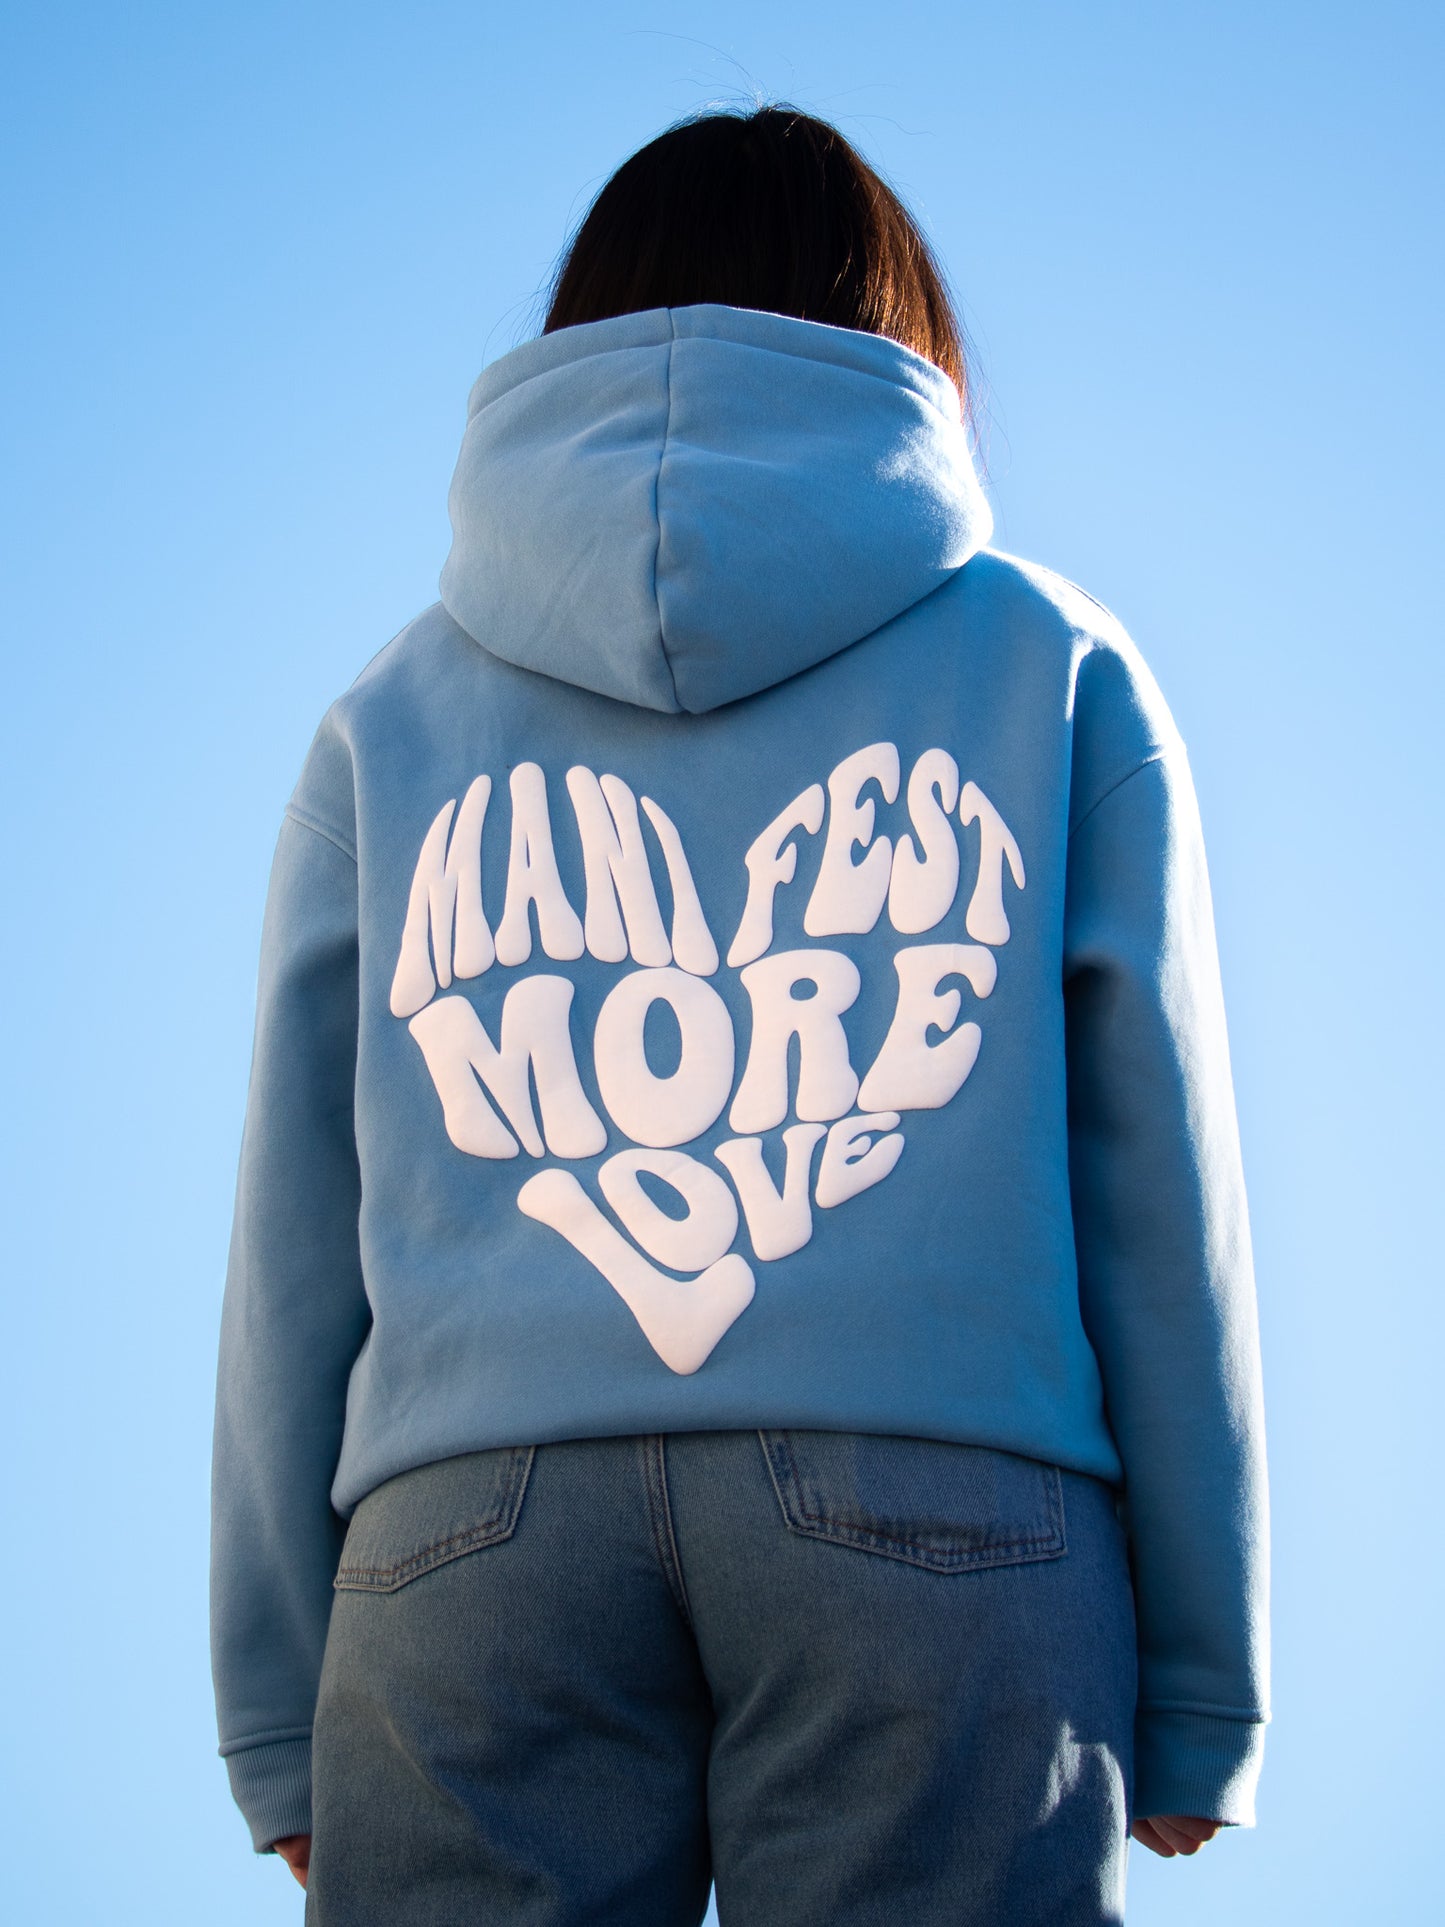 Manifest More Love Hoodie - Blue